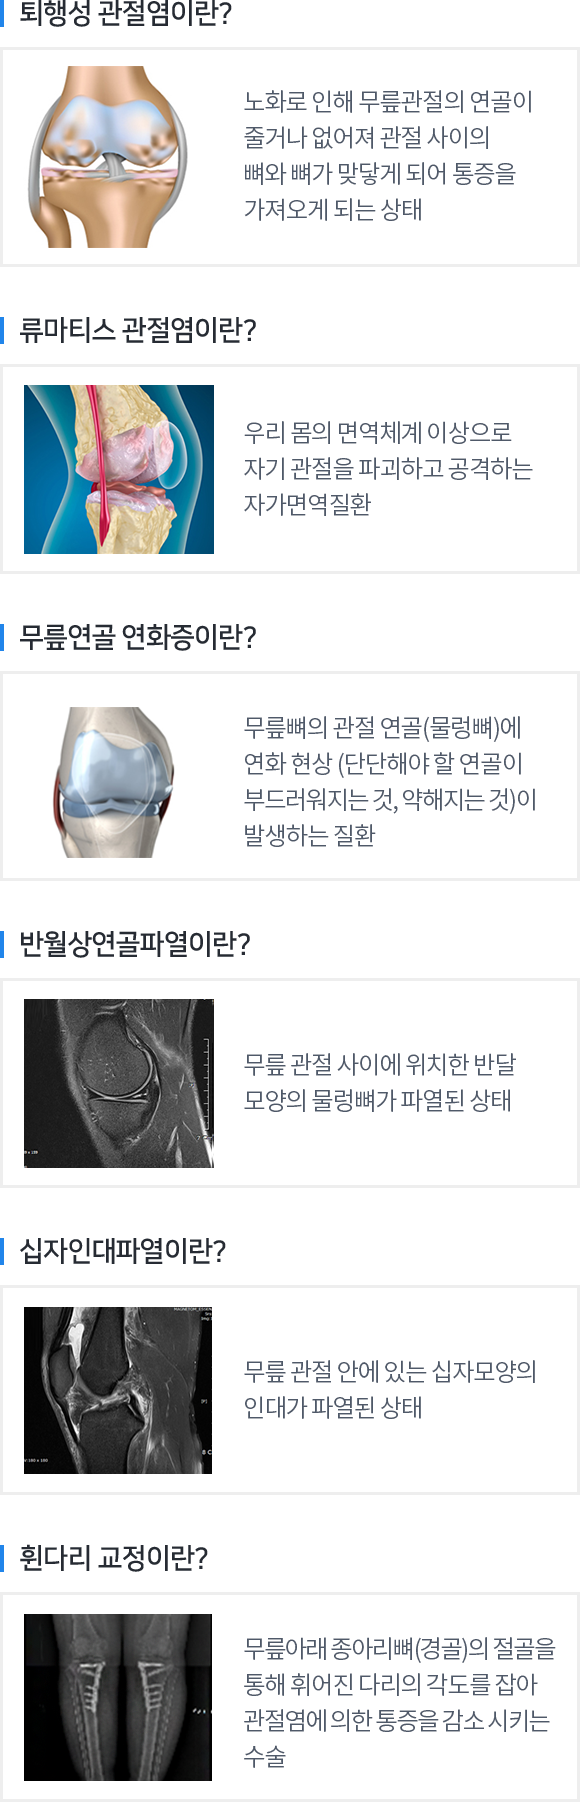 관절센터 - 무릎 내용